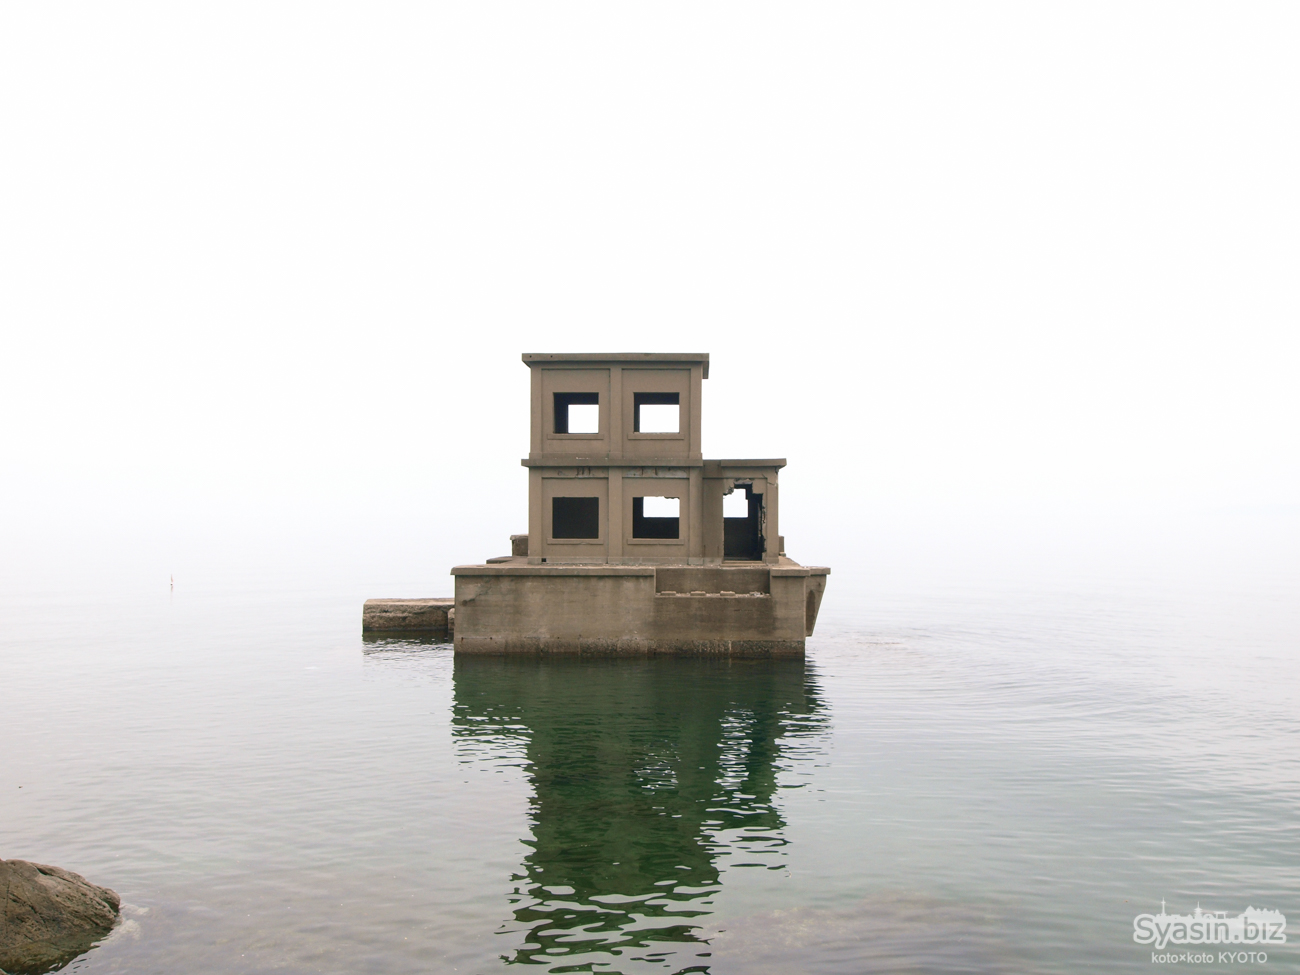 片島魚雷発射試験場 – 大村湾に浮かぶ戦争遺跡